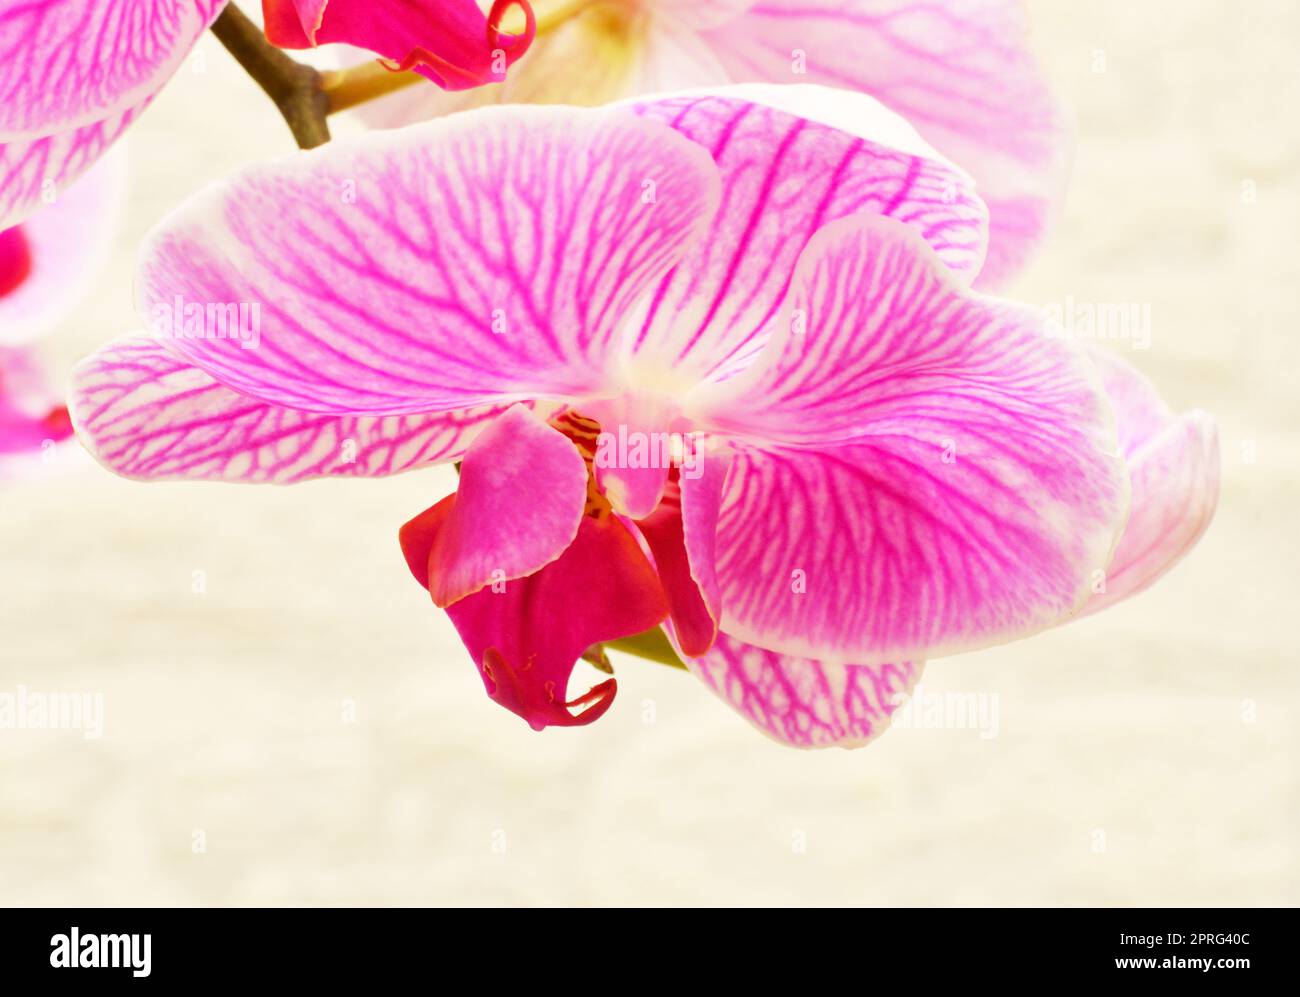 Phalaenopsis-Blüte (Latein. Phalaenopsis) oder Orchidee (Latein. Orchidaceae) von weiß-violetter Farbe Stockfoto